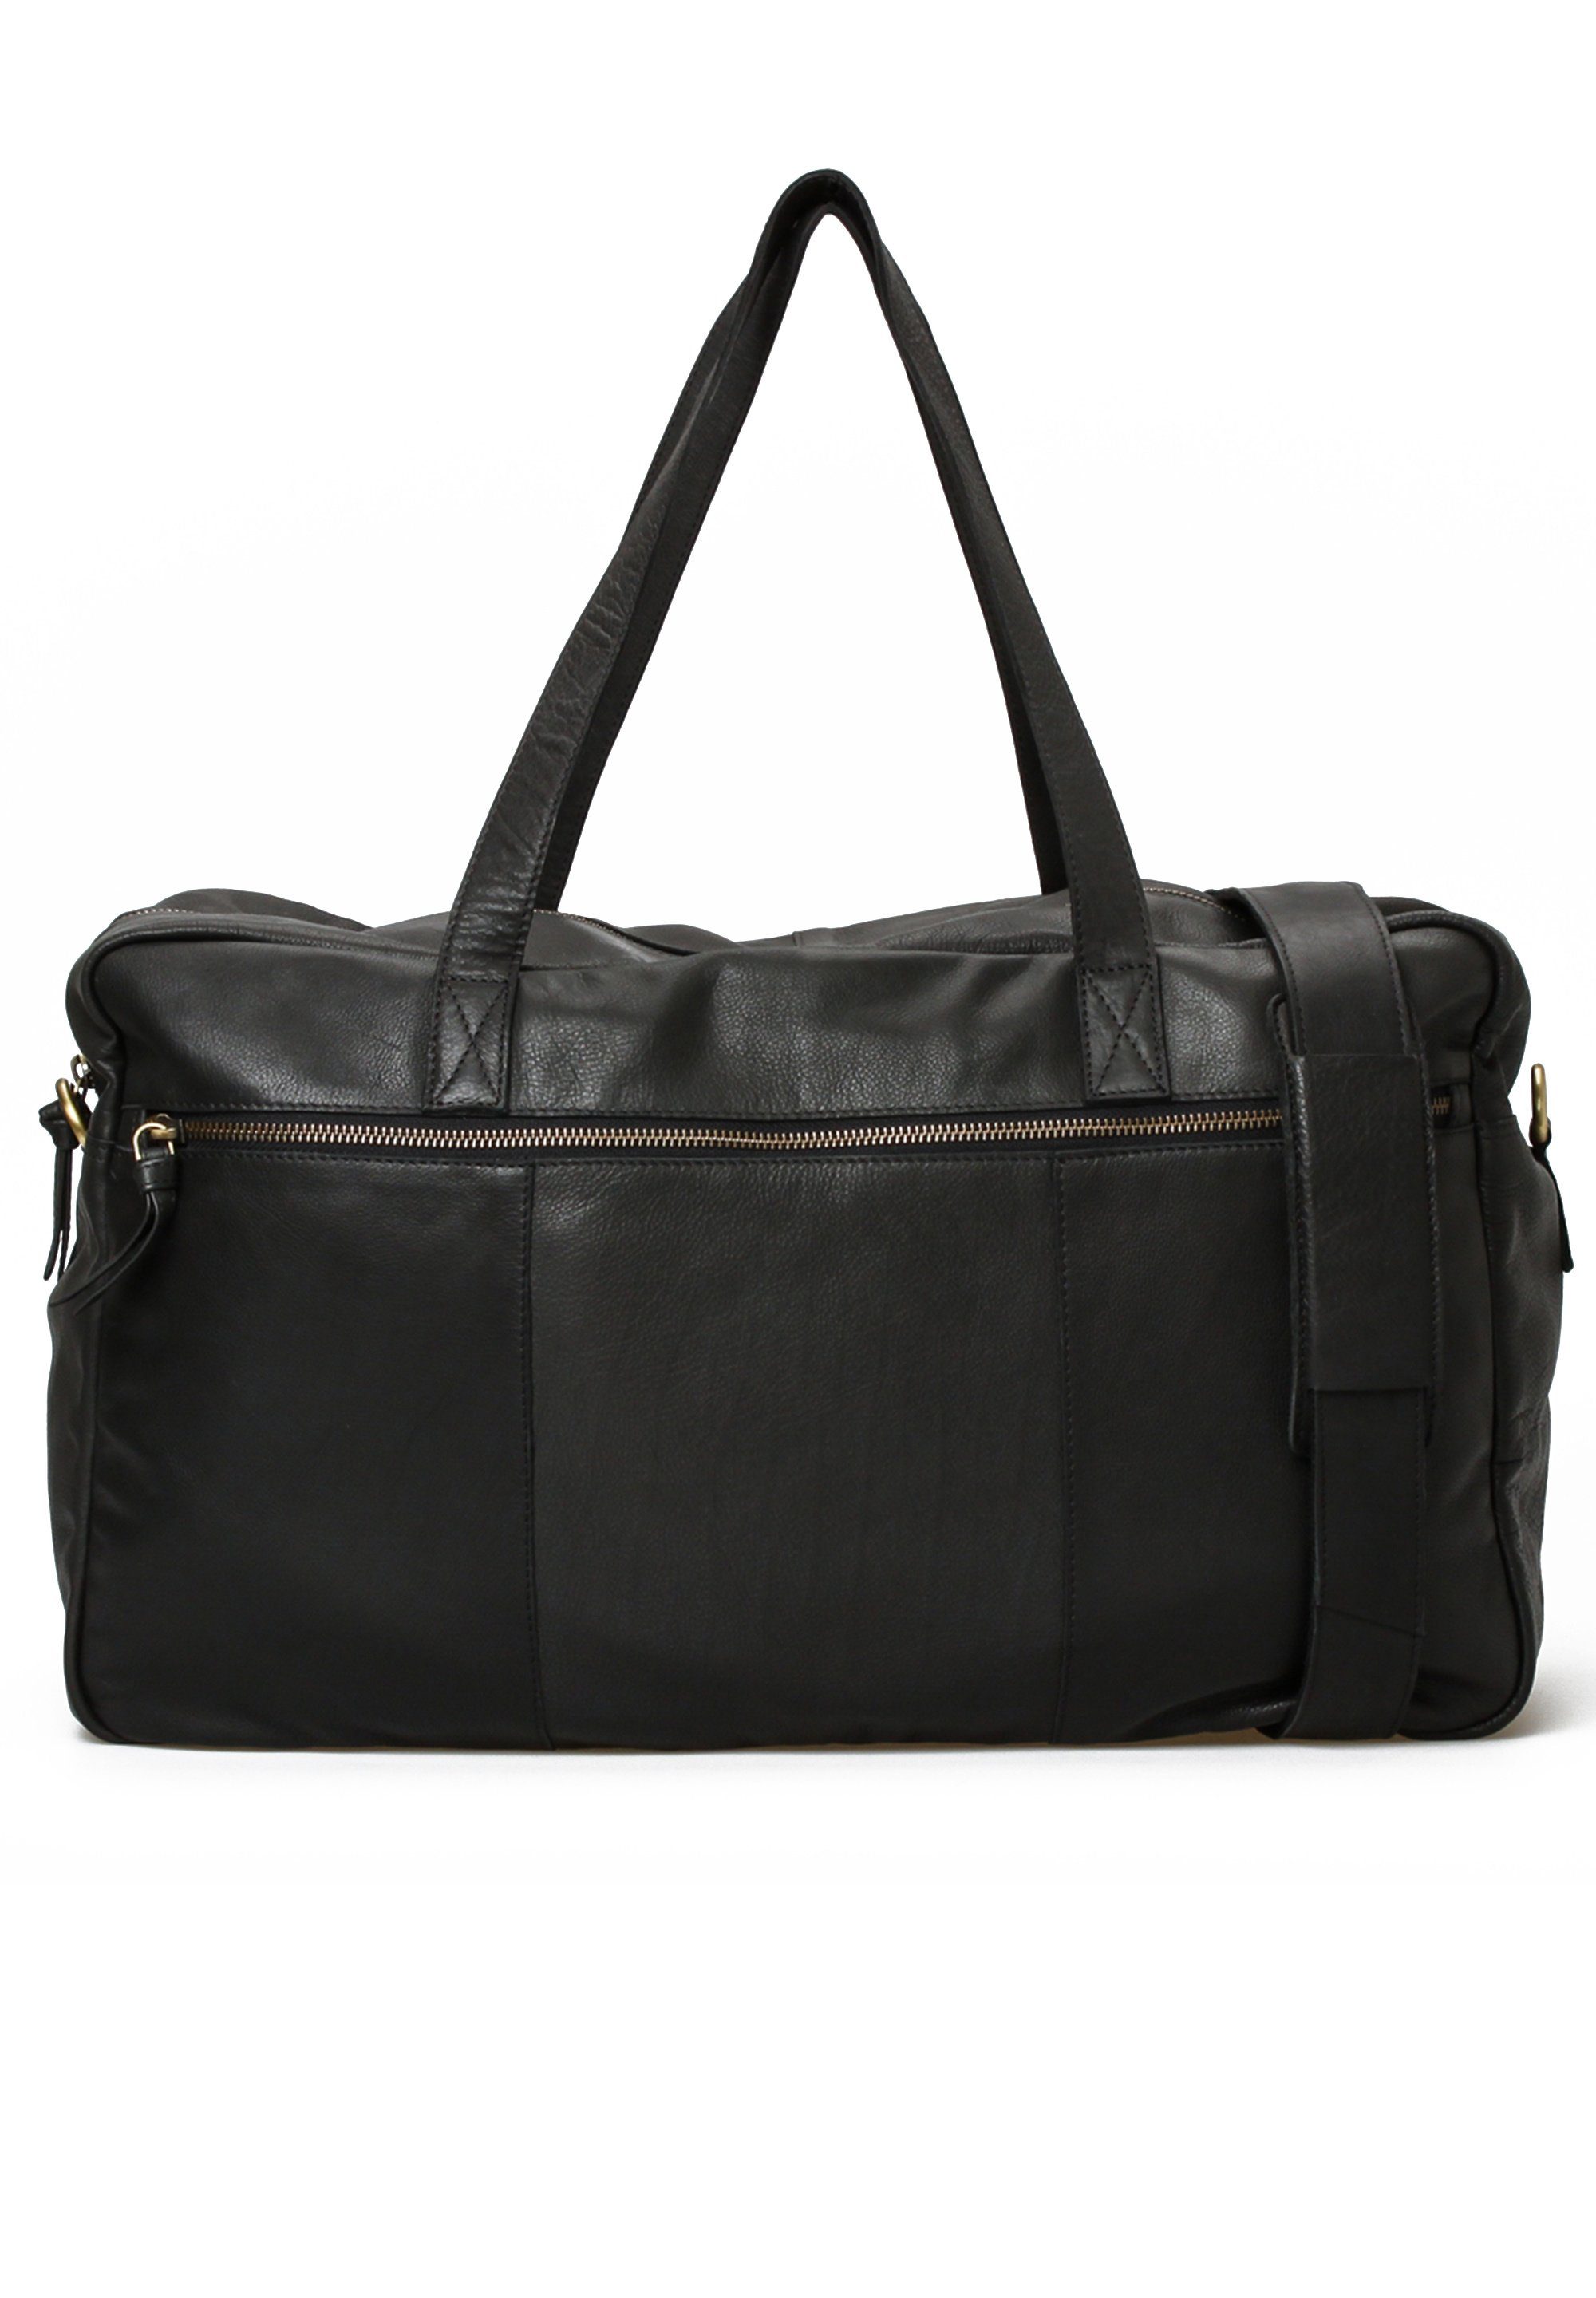 TREATS Reisetasche Camille, verstellbarer und abnehmbarer Schultergurt schwarz